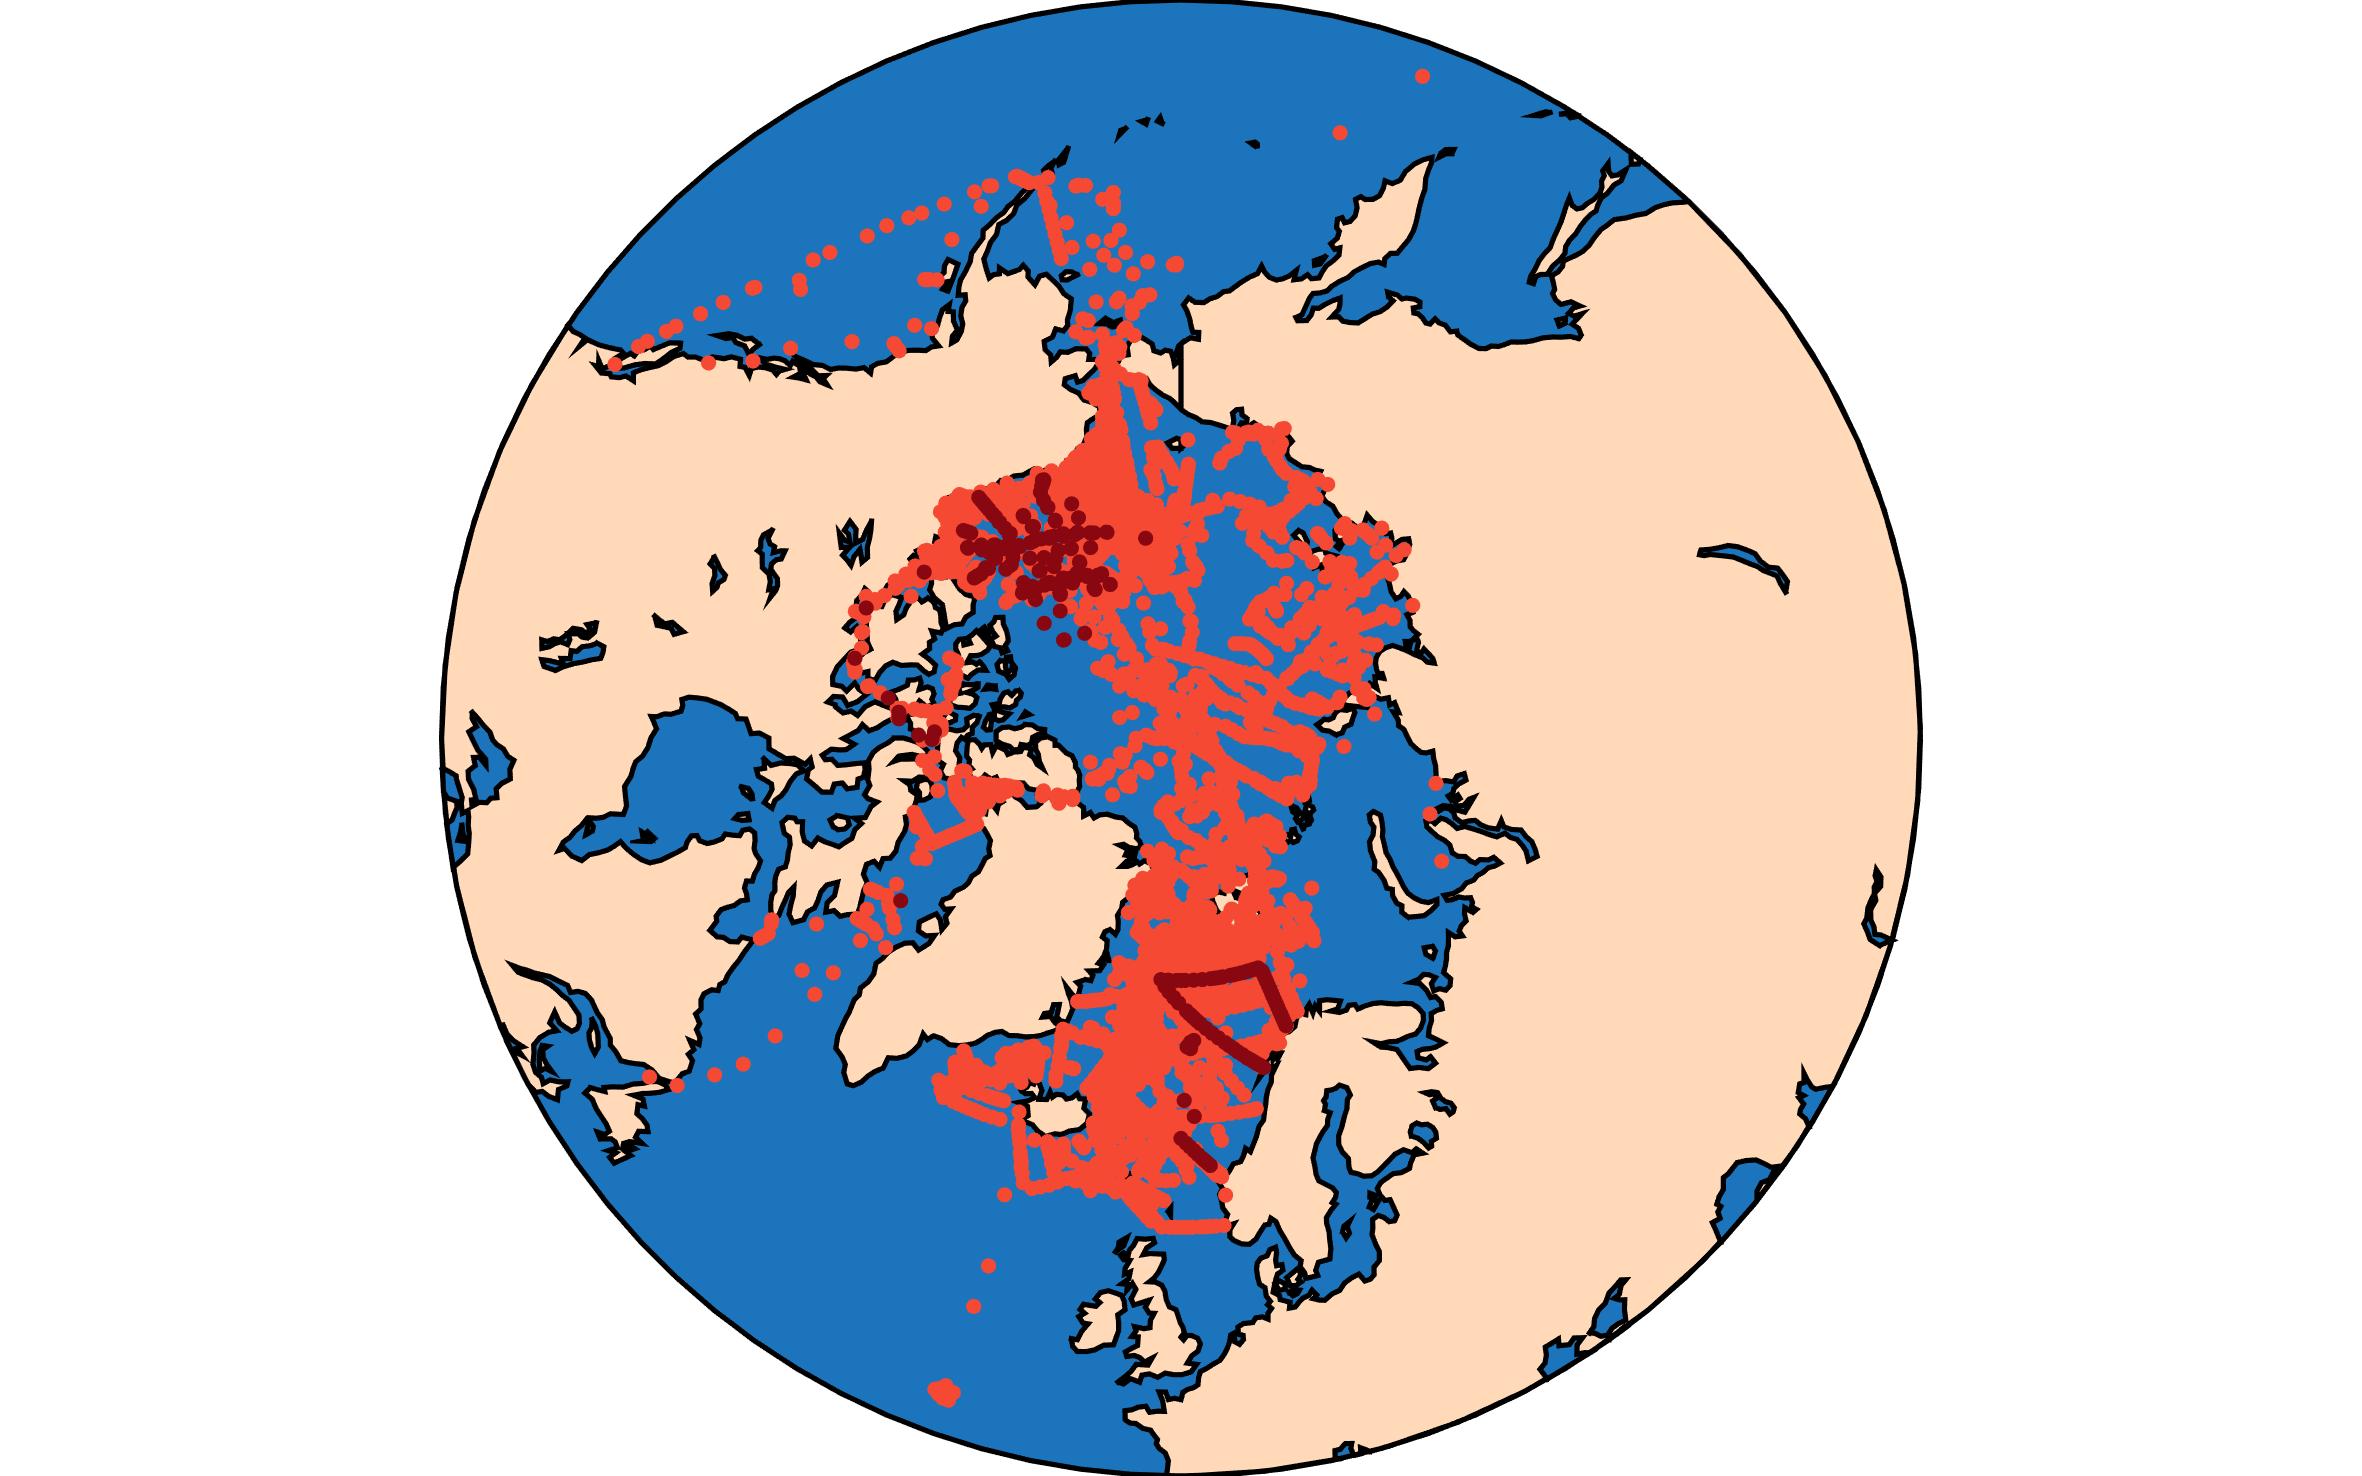 GLODAPv2.2021 Arctic Map